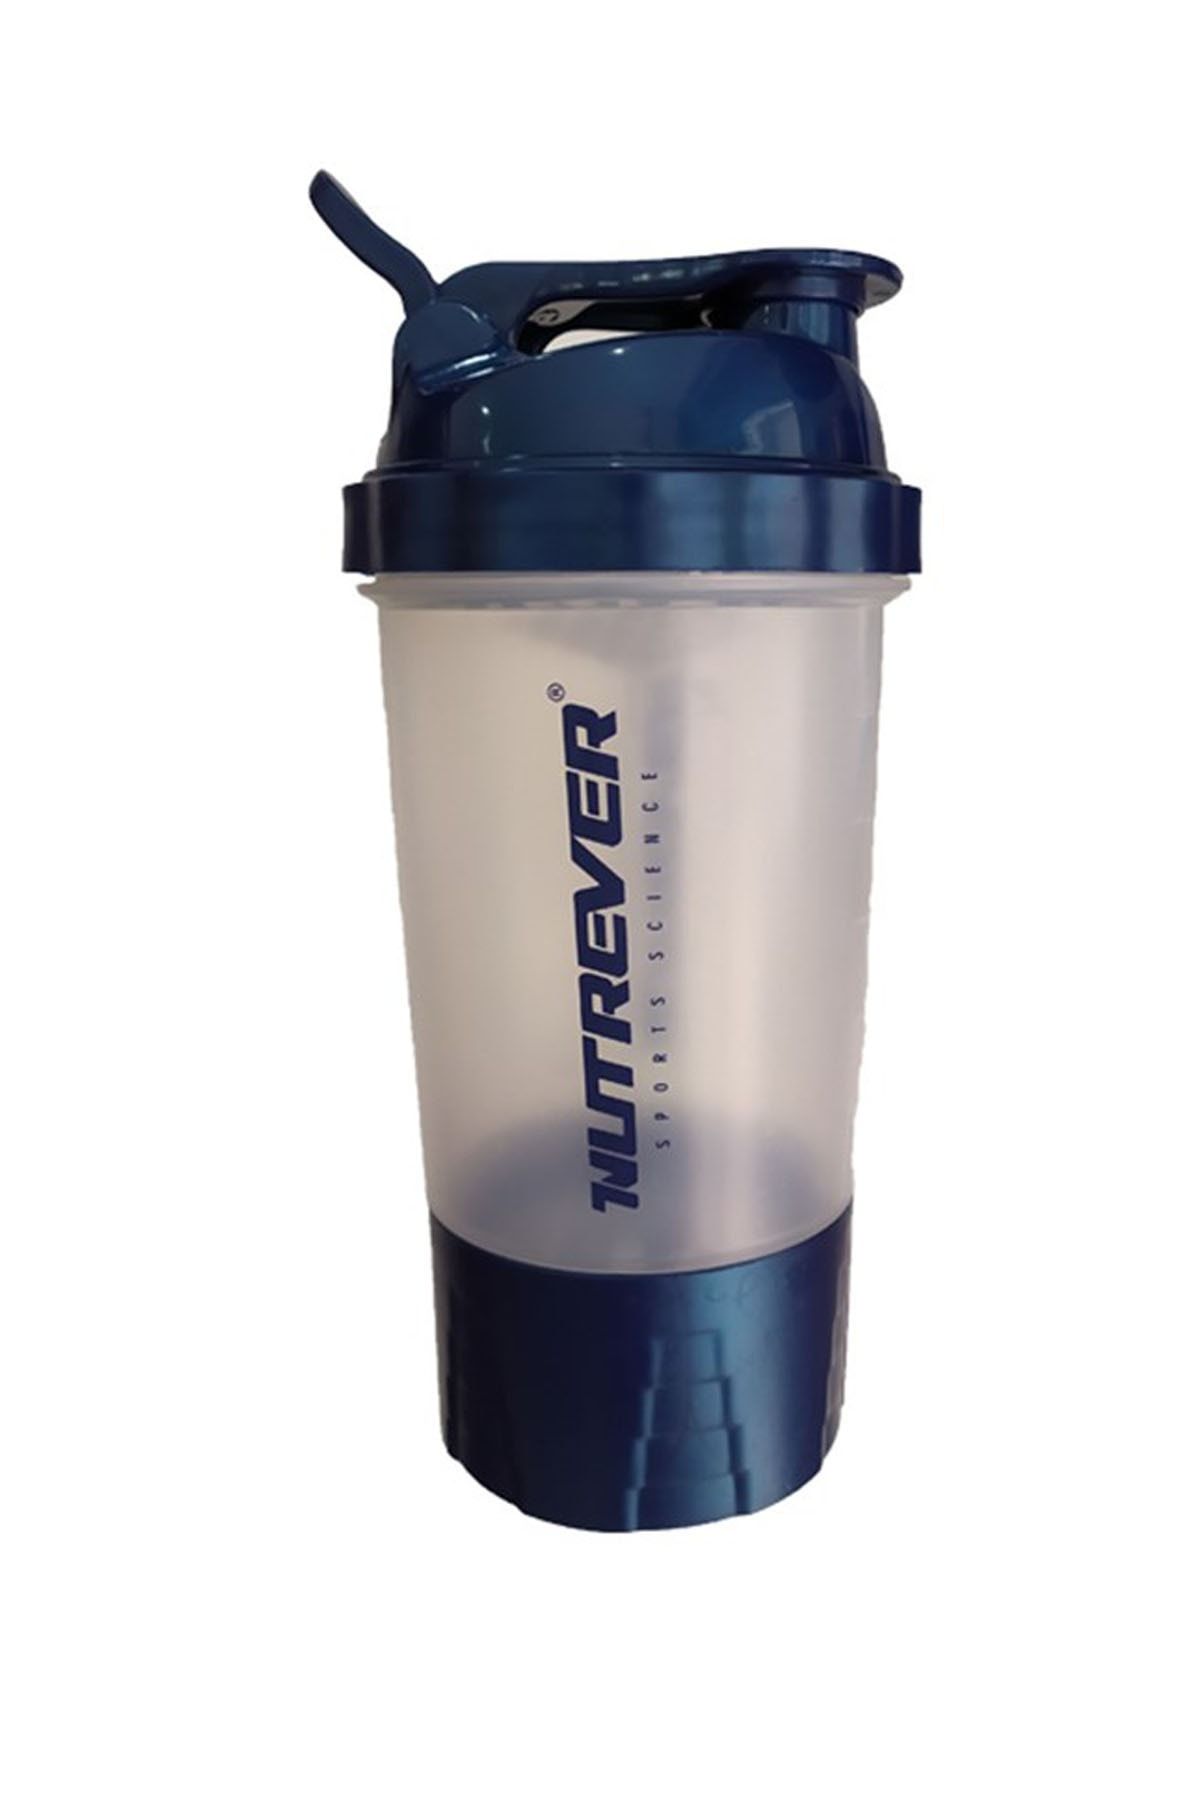 Nutrever Shaker Pro Series 500 ml